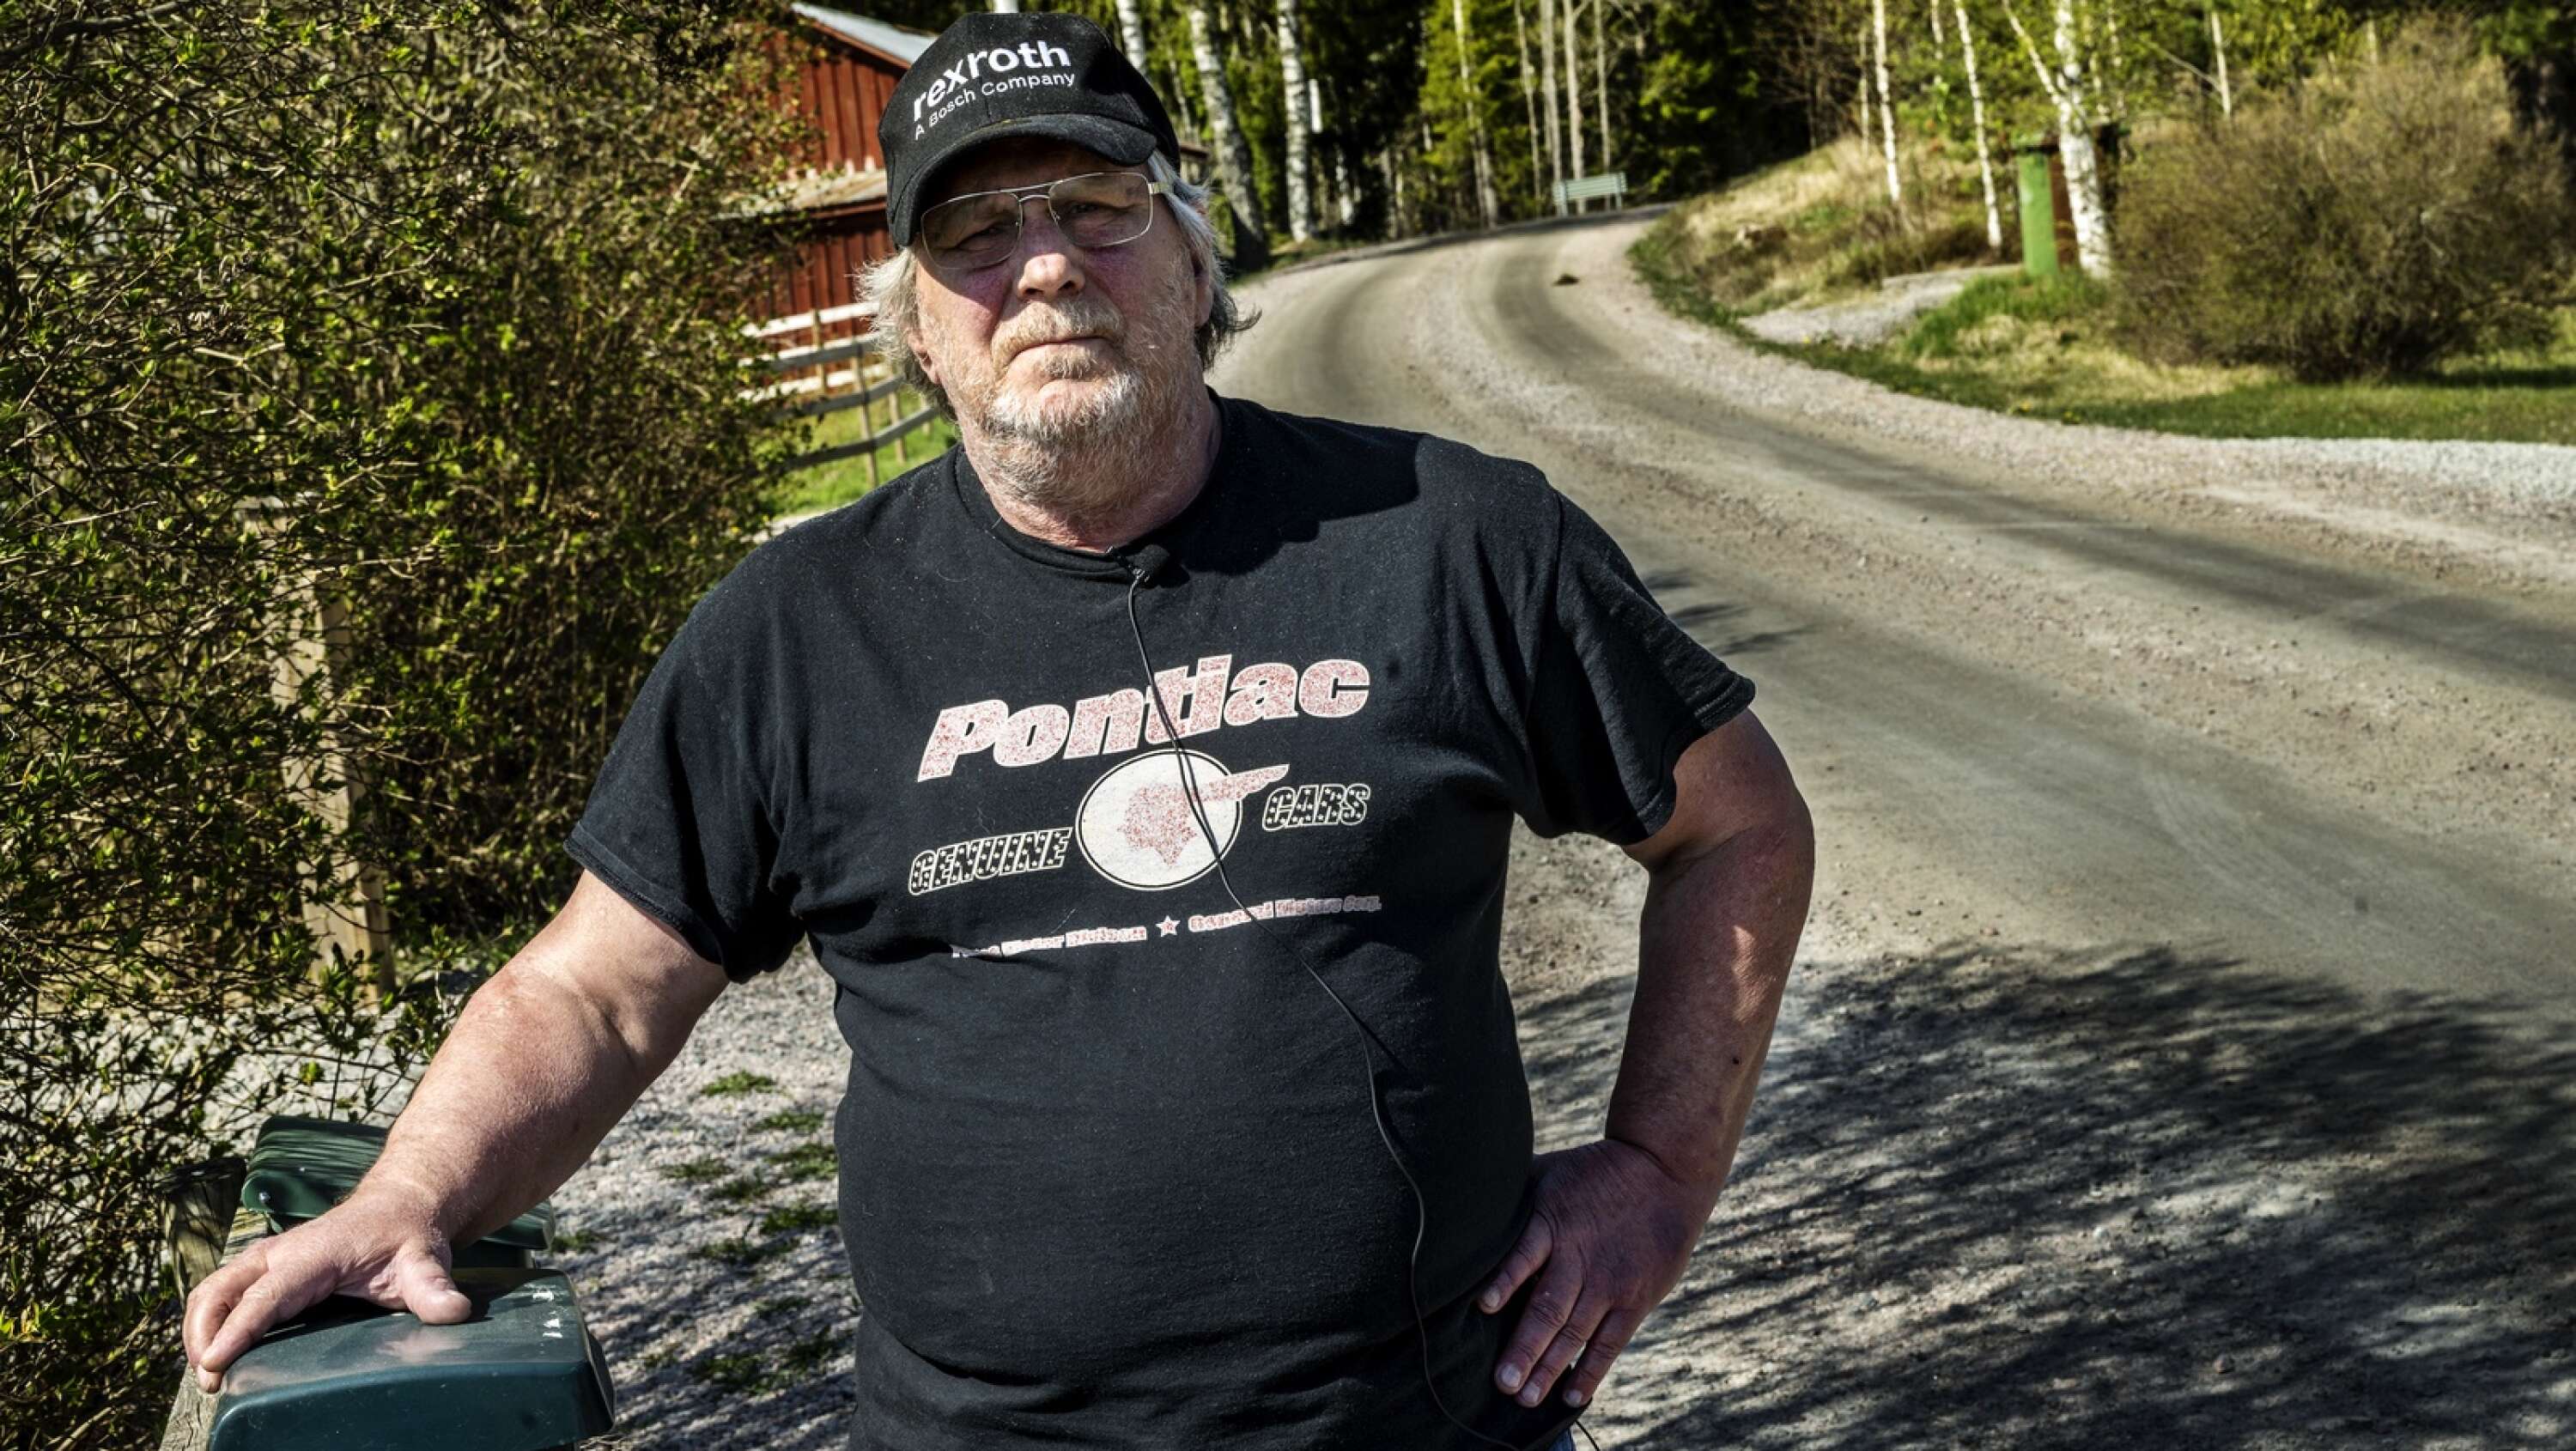 Ulf Hermansson behöver korsa vägen för att hämta posten. För att vara på säkra sidan vänder han numera ryggen till vägen om det skulle komma en bil på grusvägen.